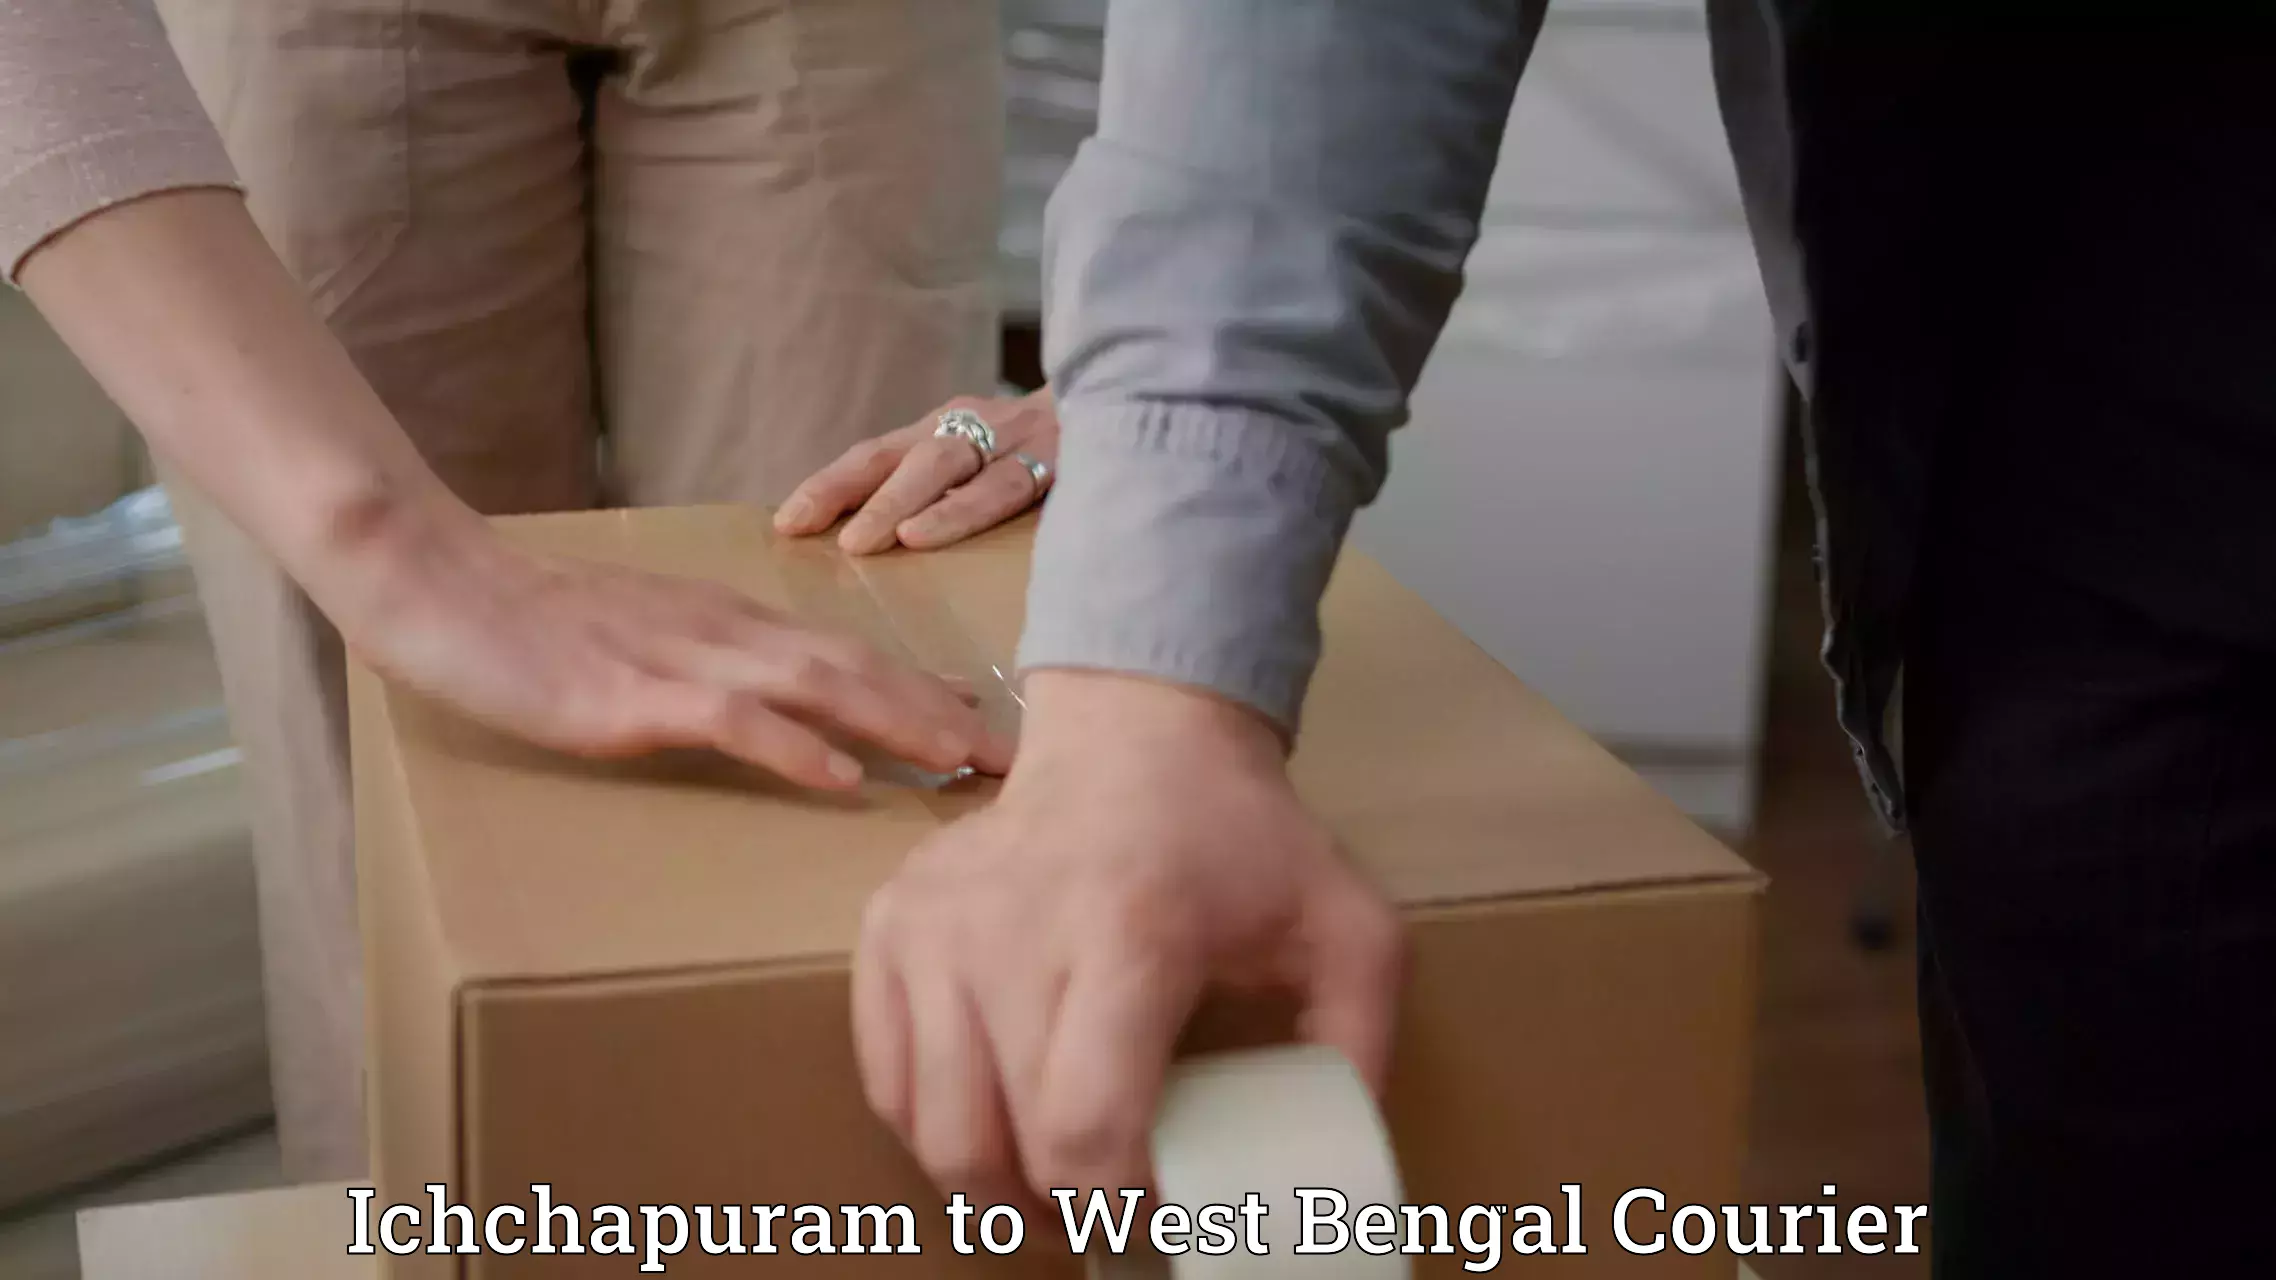 Professional courier services Ichchapuram to Puruliya